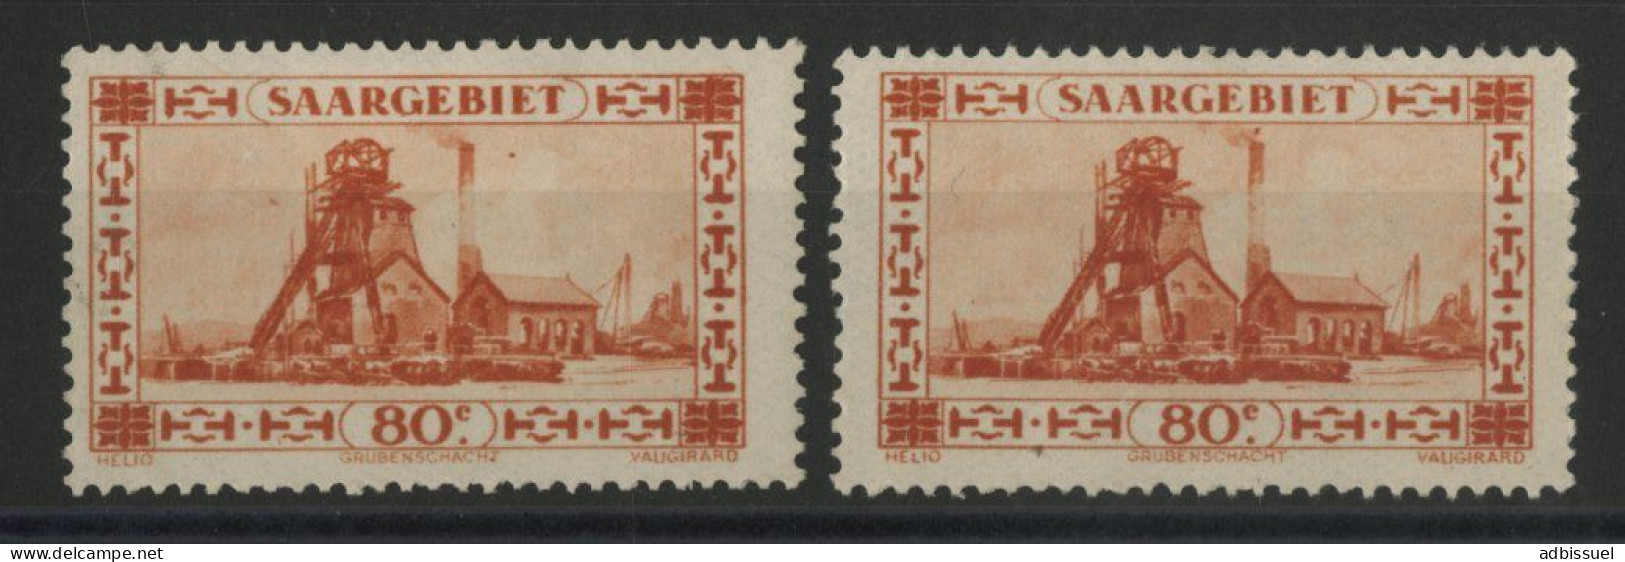 SARRE VARIETE N° 116I à 116 II (Y & T 115) Neufs **/* (MNH/MH) Voir Description - Unused Stamps